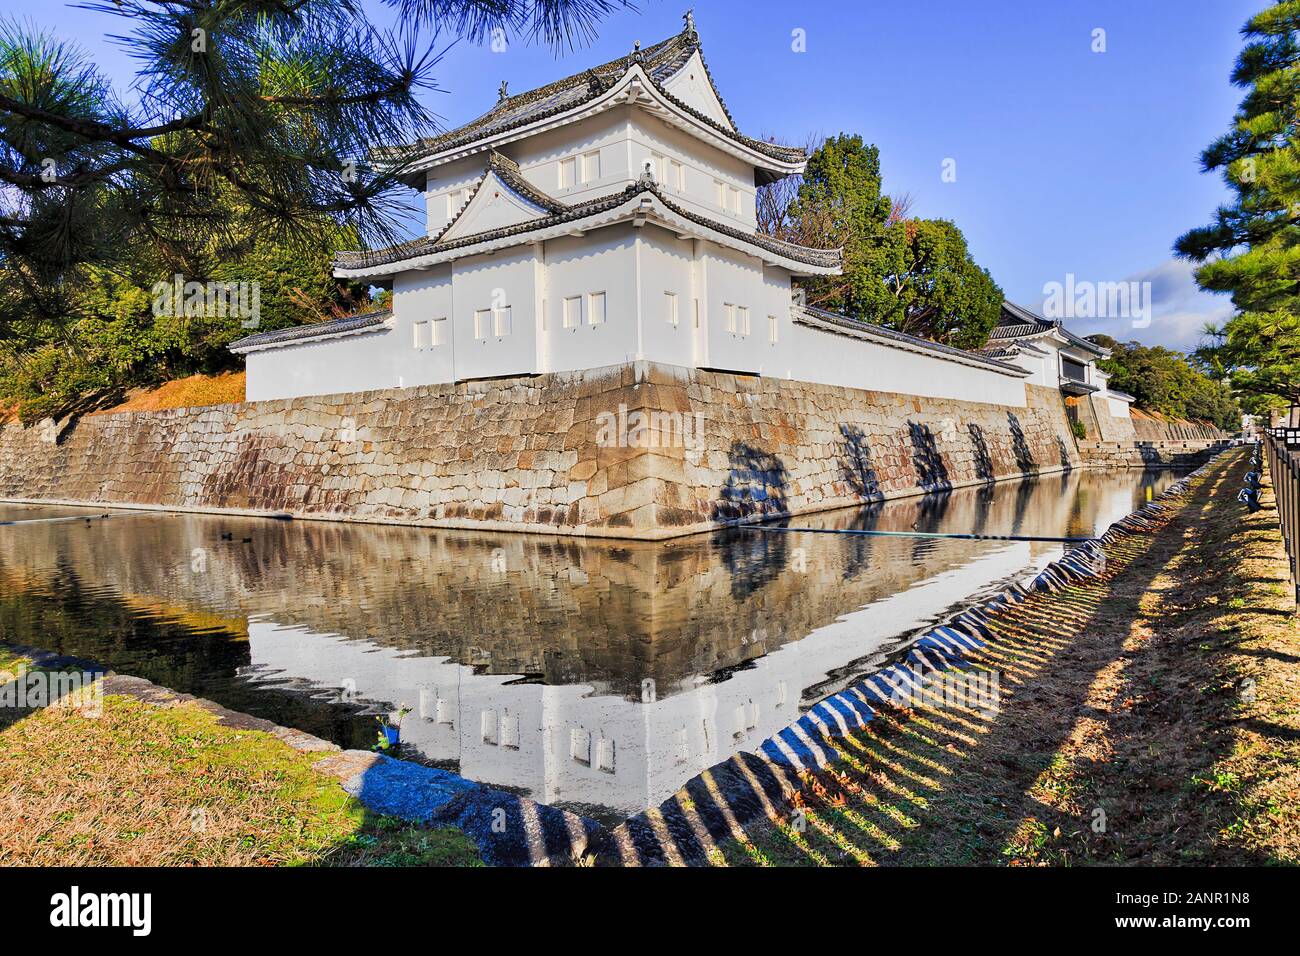 Tour d'angle blanc château de Nijo Kyoto - Palais des shoguns japonais. La lumière du matin doux se reflétant dans les eaux de douves qui entourent encore. Banque D'Images